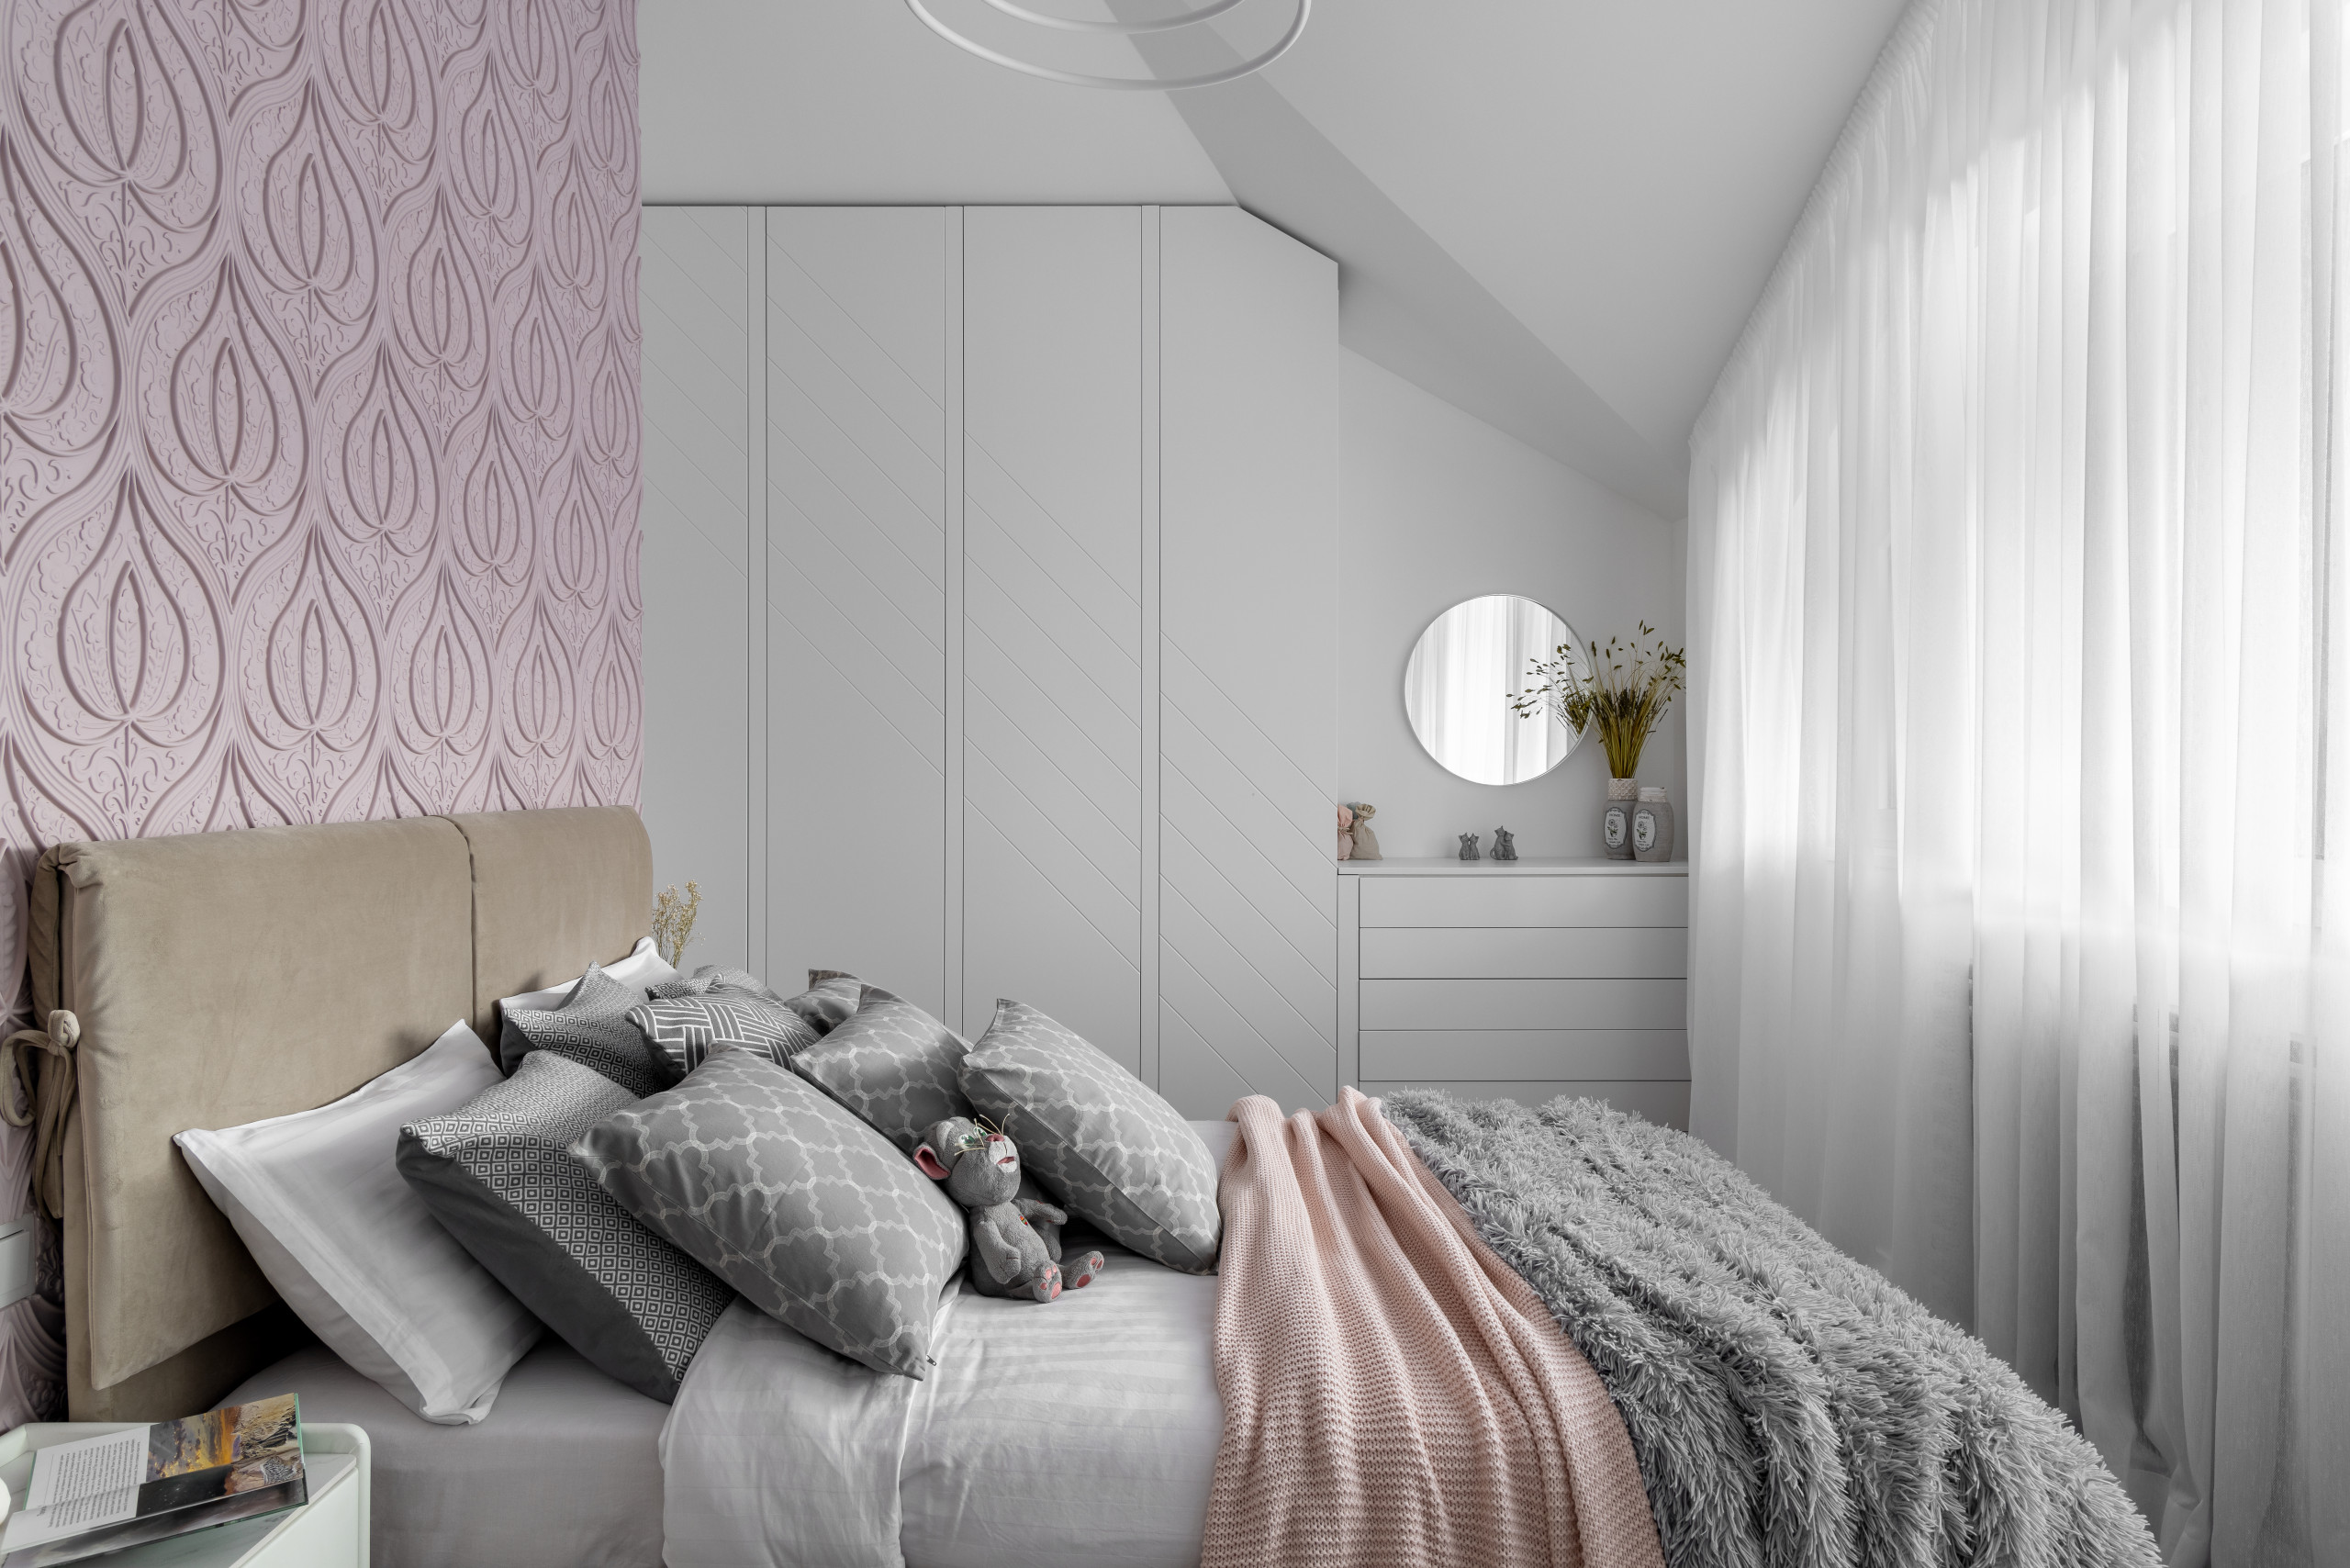 Интерьер женской комнаты – особенности дизайна, цветовые решения, фото комнаты для девушки